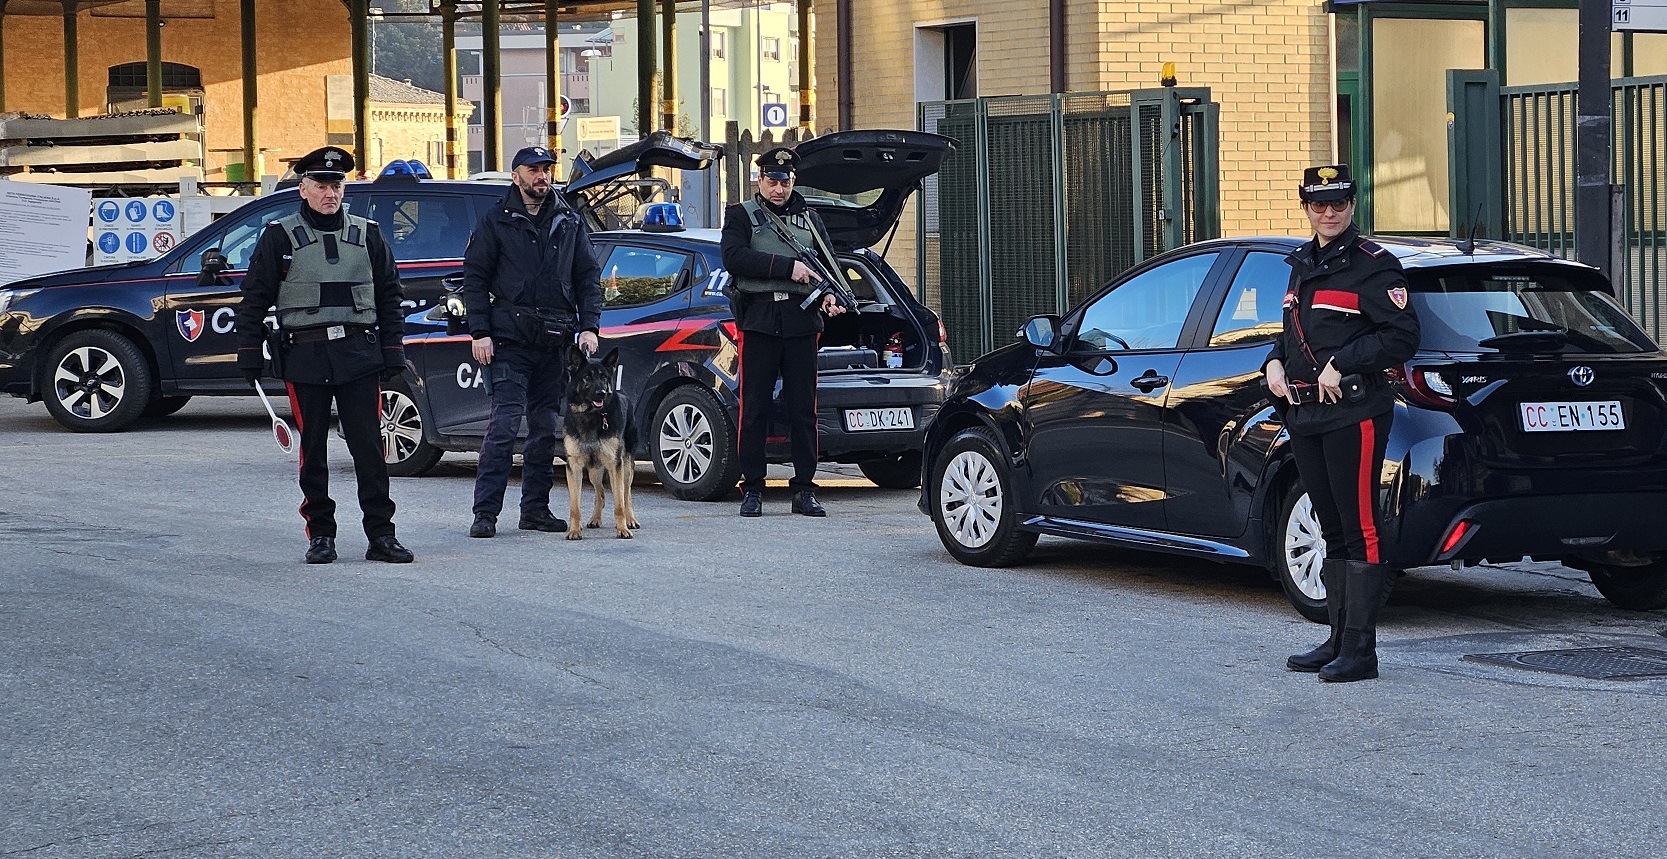 Carabinieri, in provincia di Macerata controlli e sanzioni